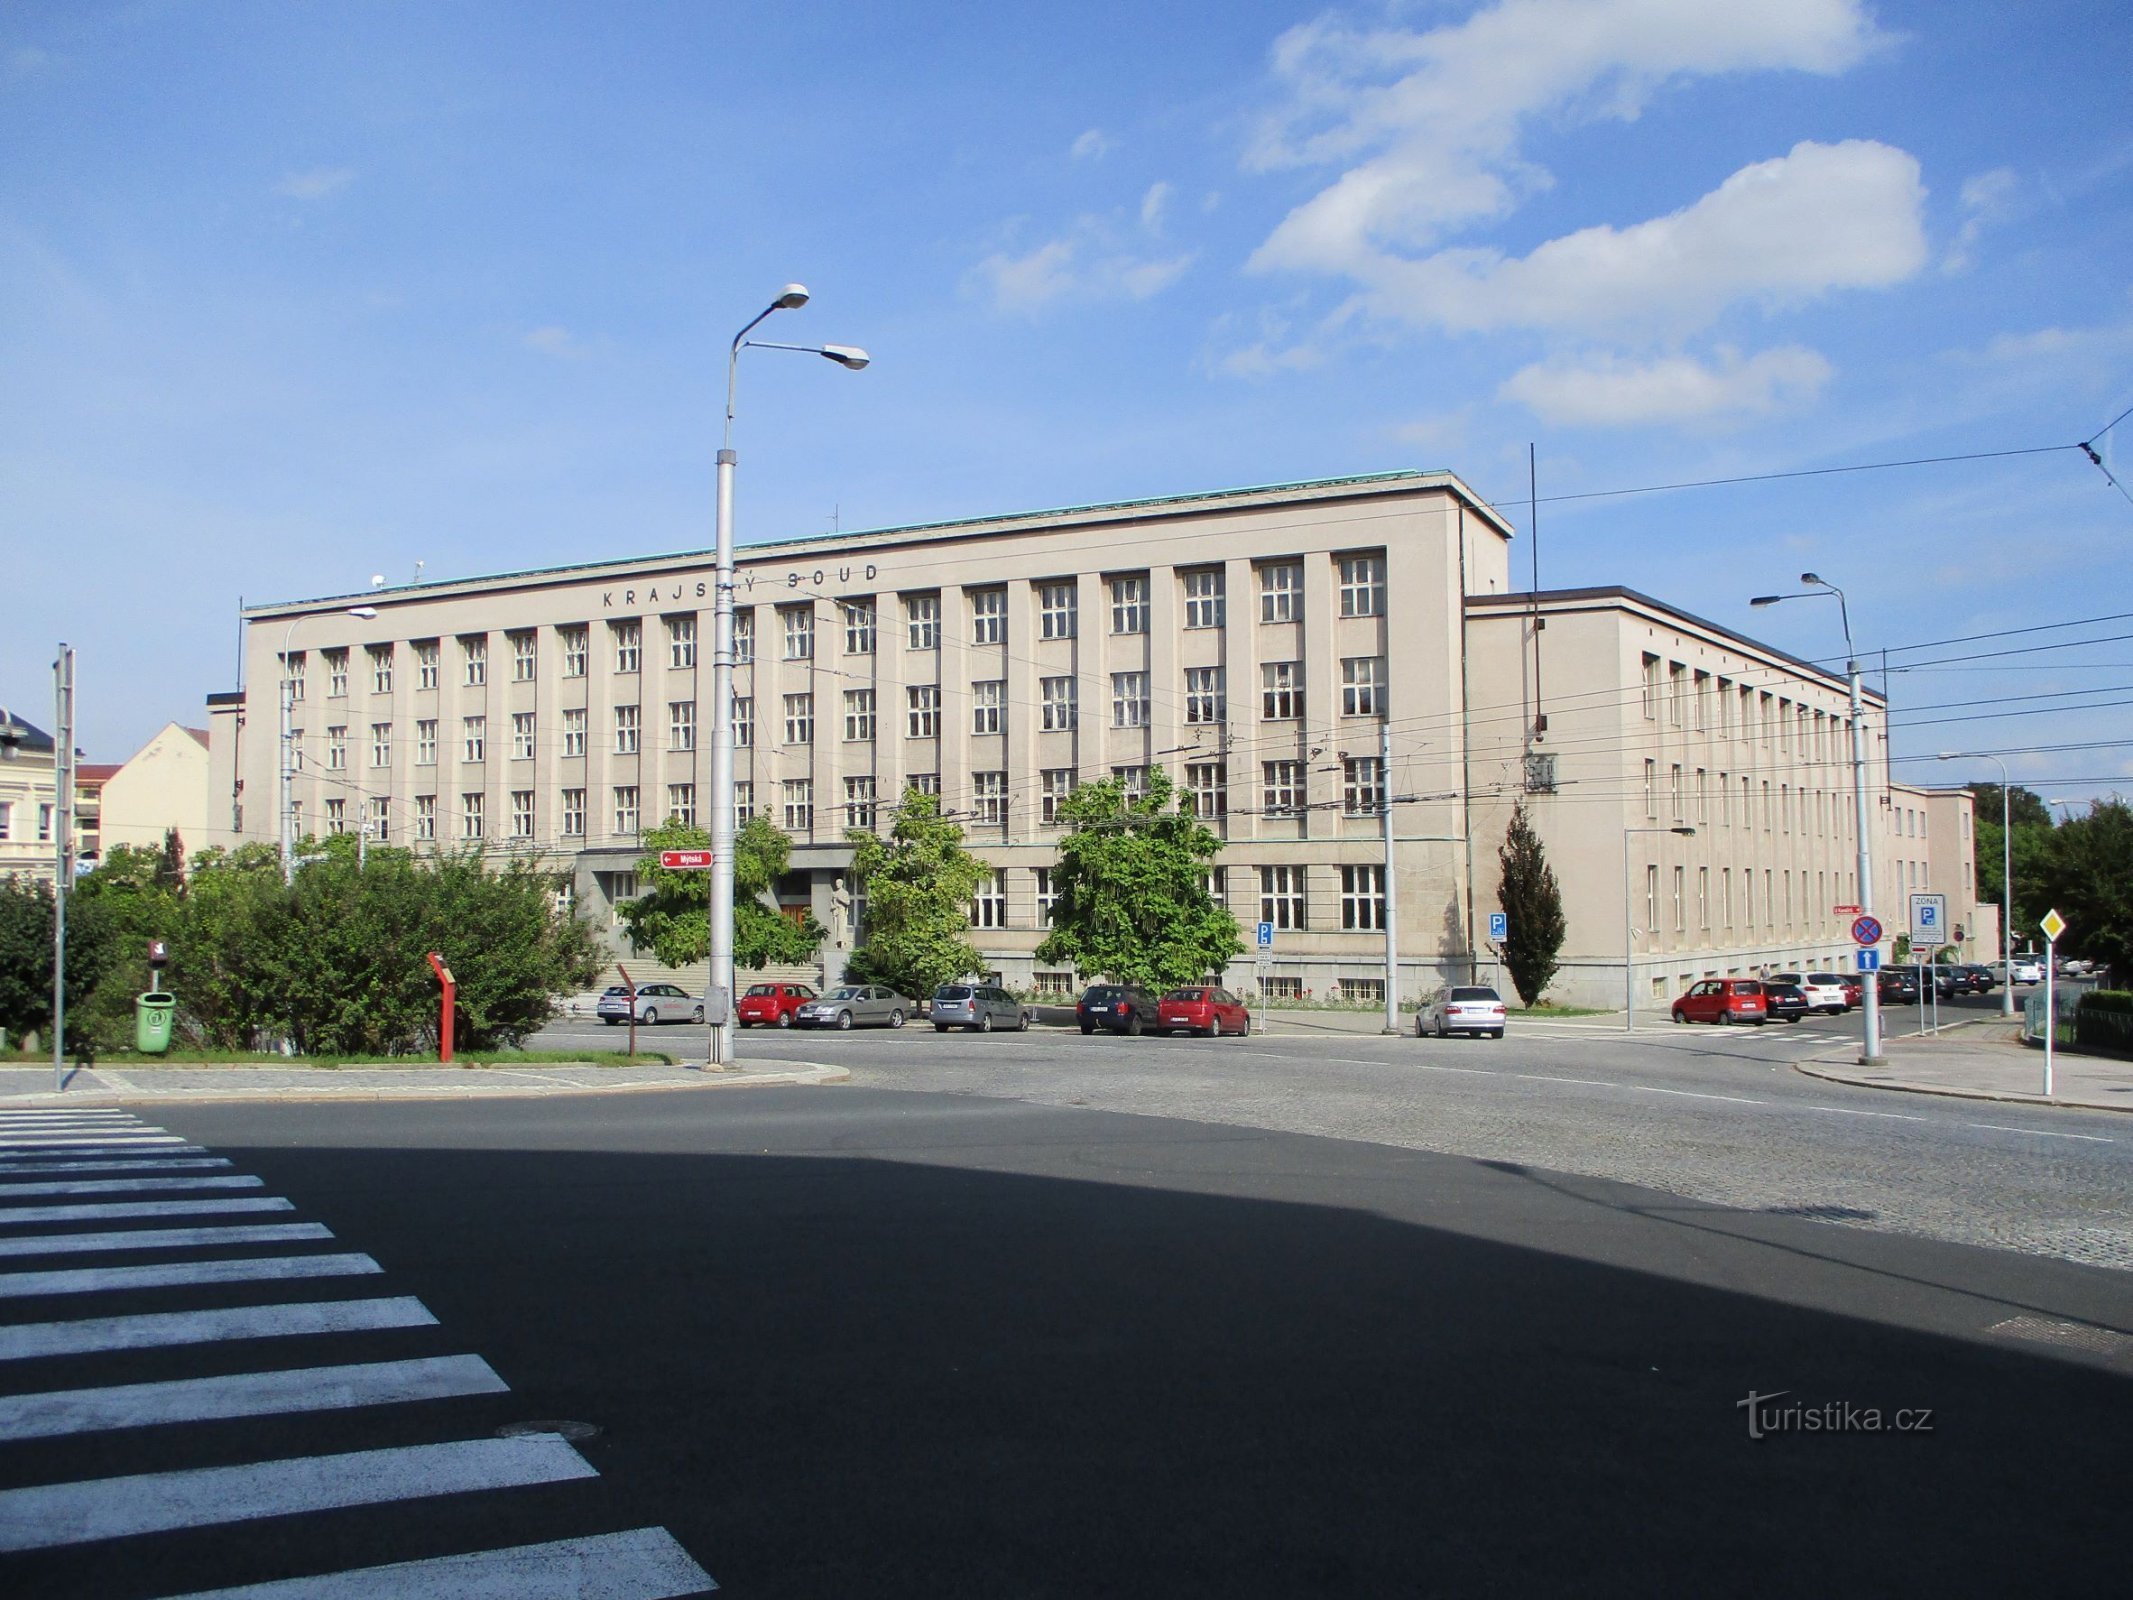 Περιφερειακό Δικαστήριο στο Hradec Králové (15.9.2019 Σεπτεμβρίου XNUMX)